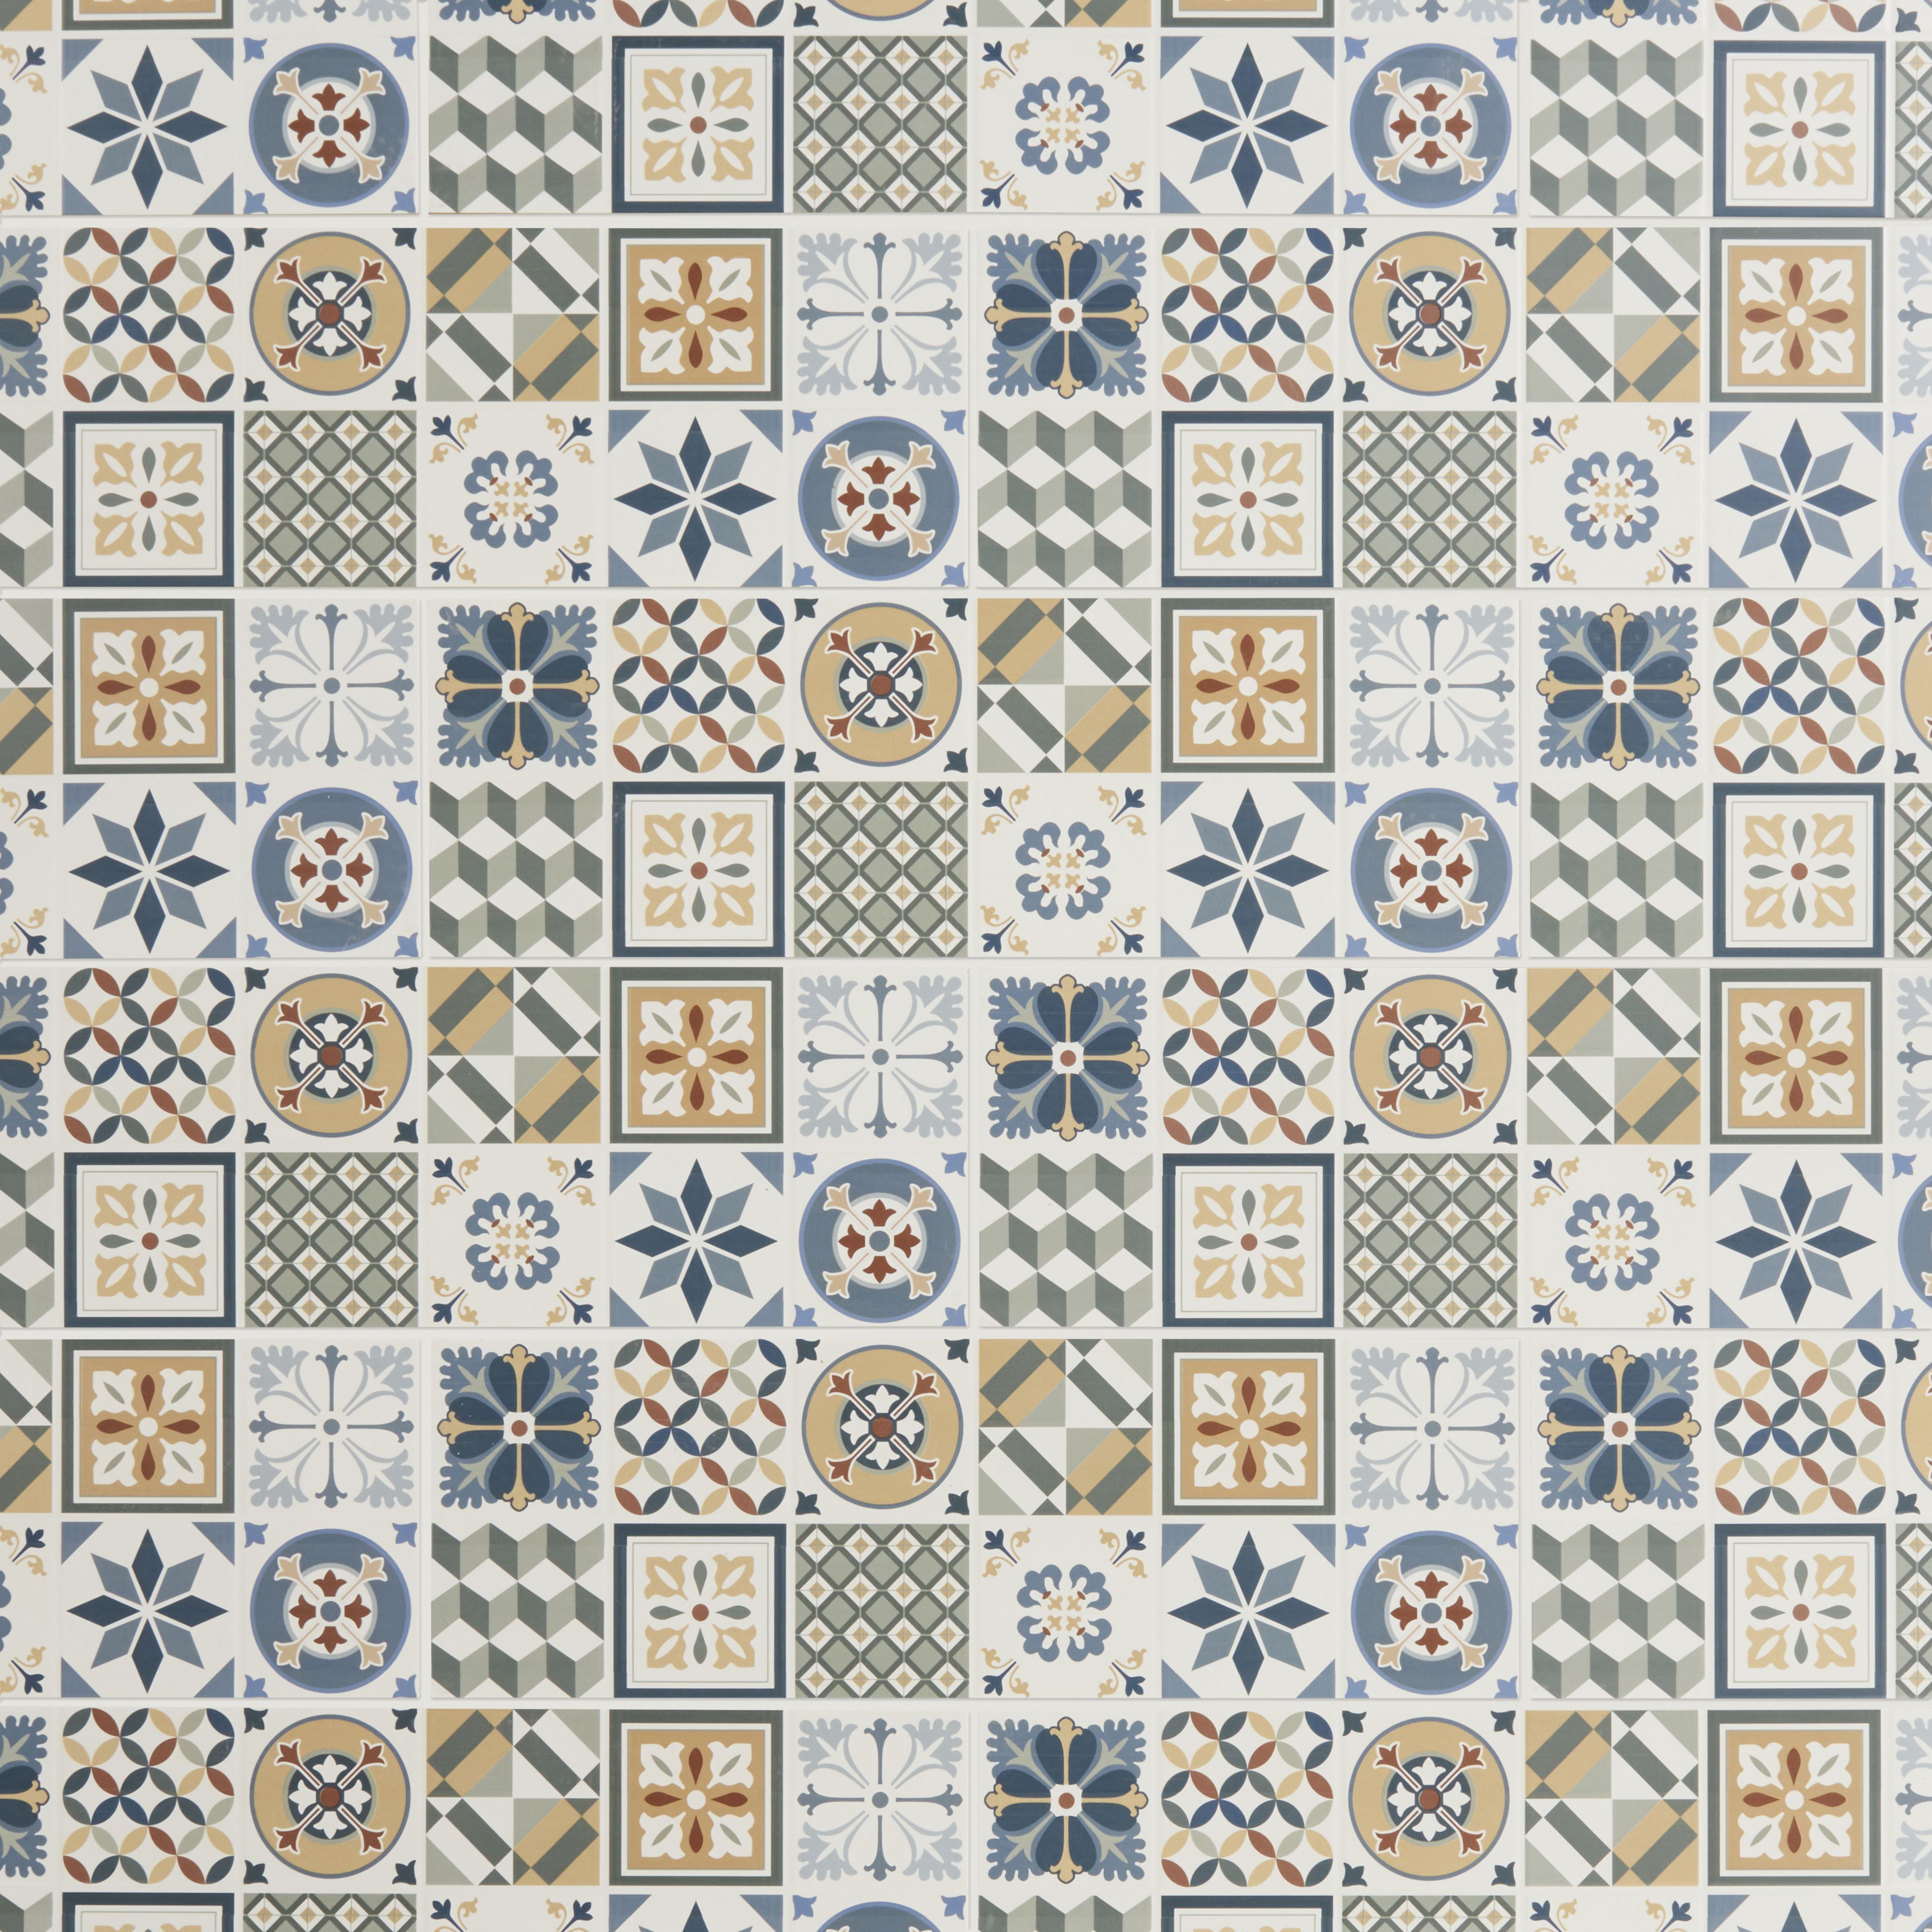 Konkrete Multicolour Matt Patchwork Ceramic Indoor Tile, Pack of 8, (L)600mm (W)200mm